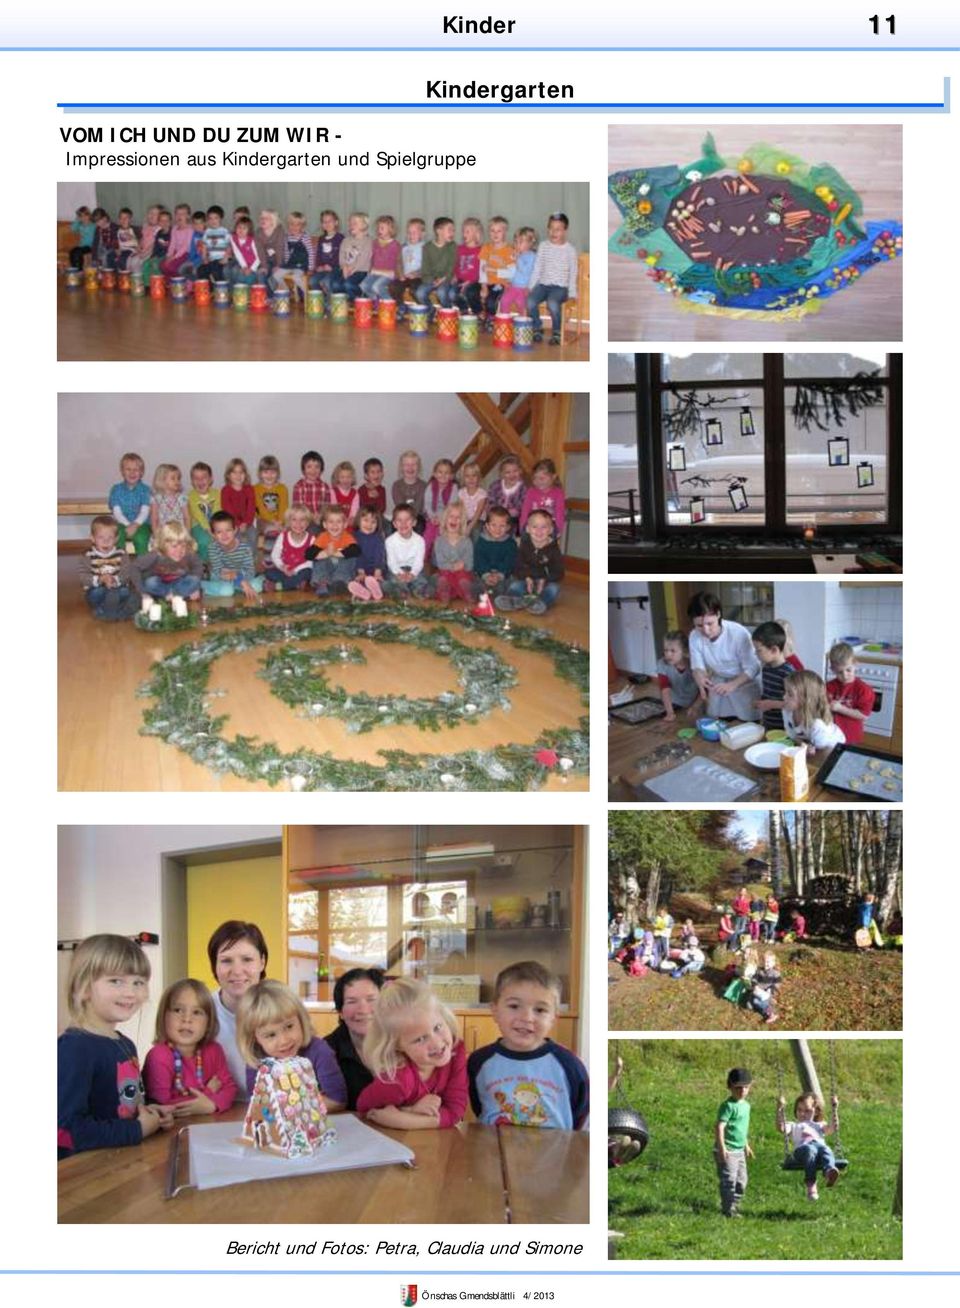 Spielgruppe Kindergarten Bericht